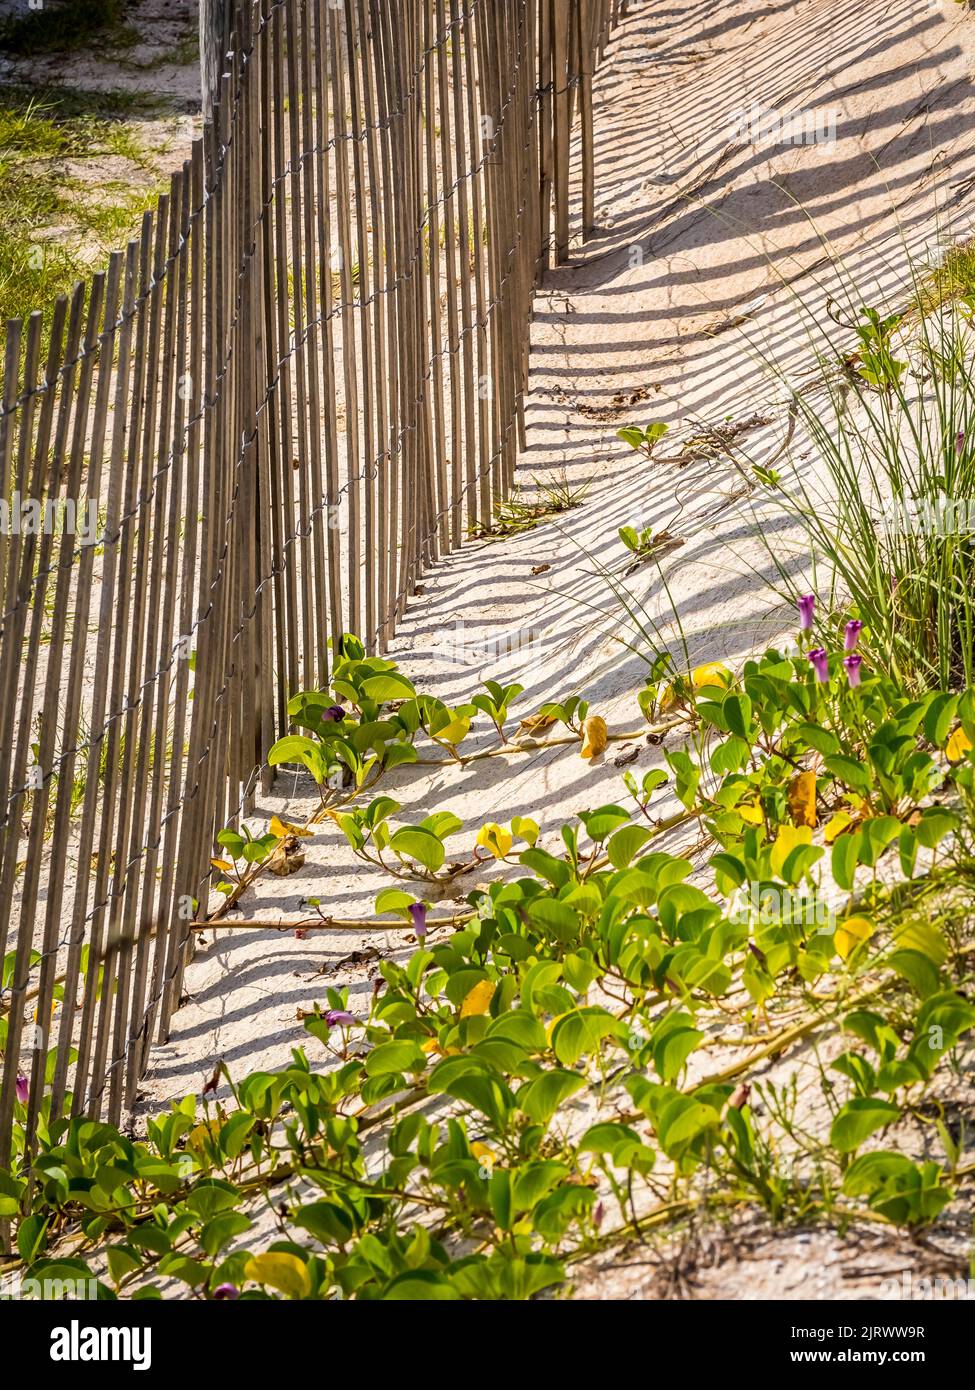 Clôture de neige dans les dunes de sable sur la plage de l'océan Atlantique dans le parc national Washington Oaks Gardens à Palm Coast Florida USA Banque D'Images